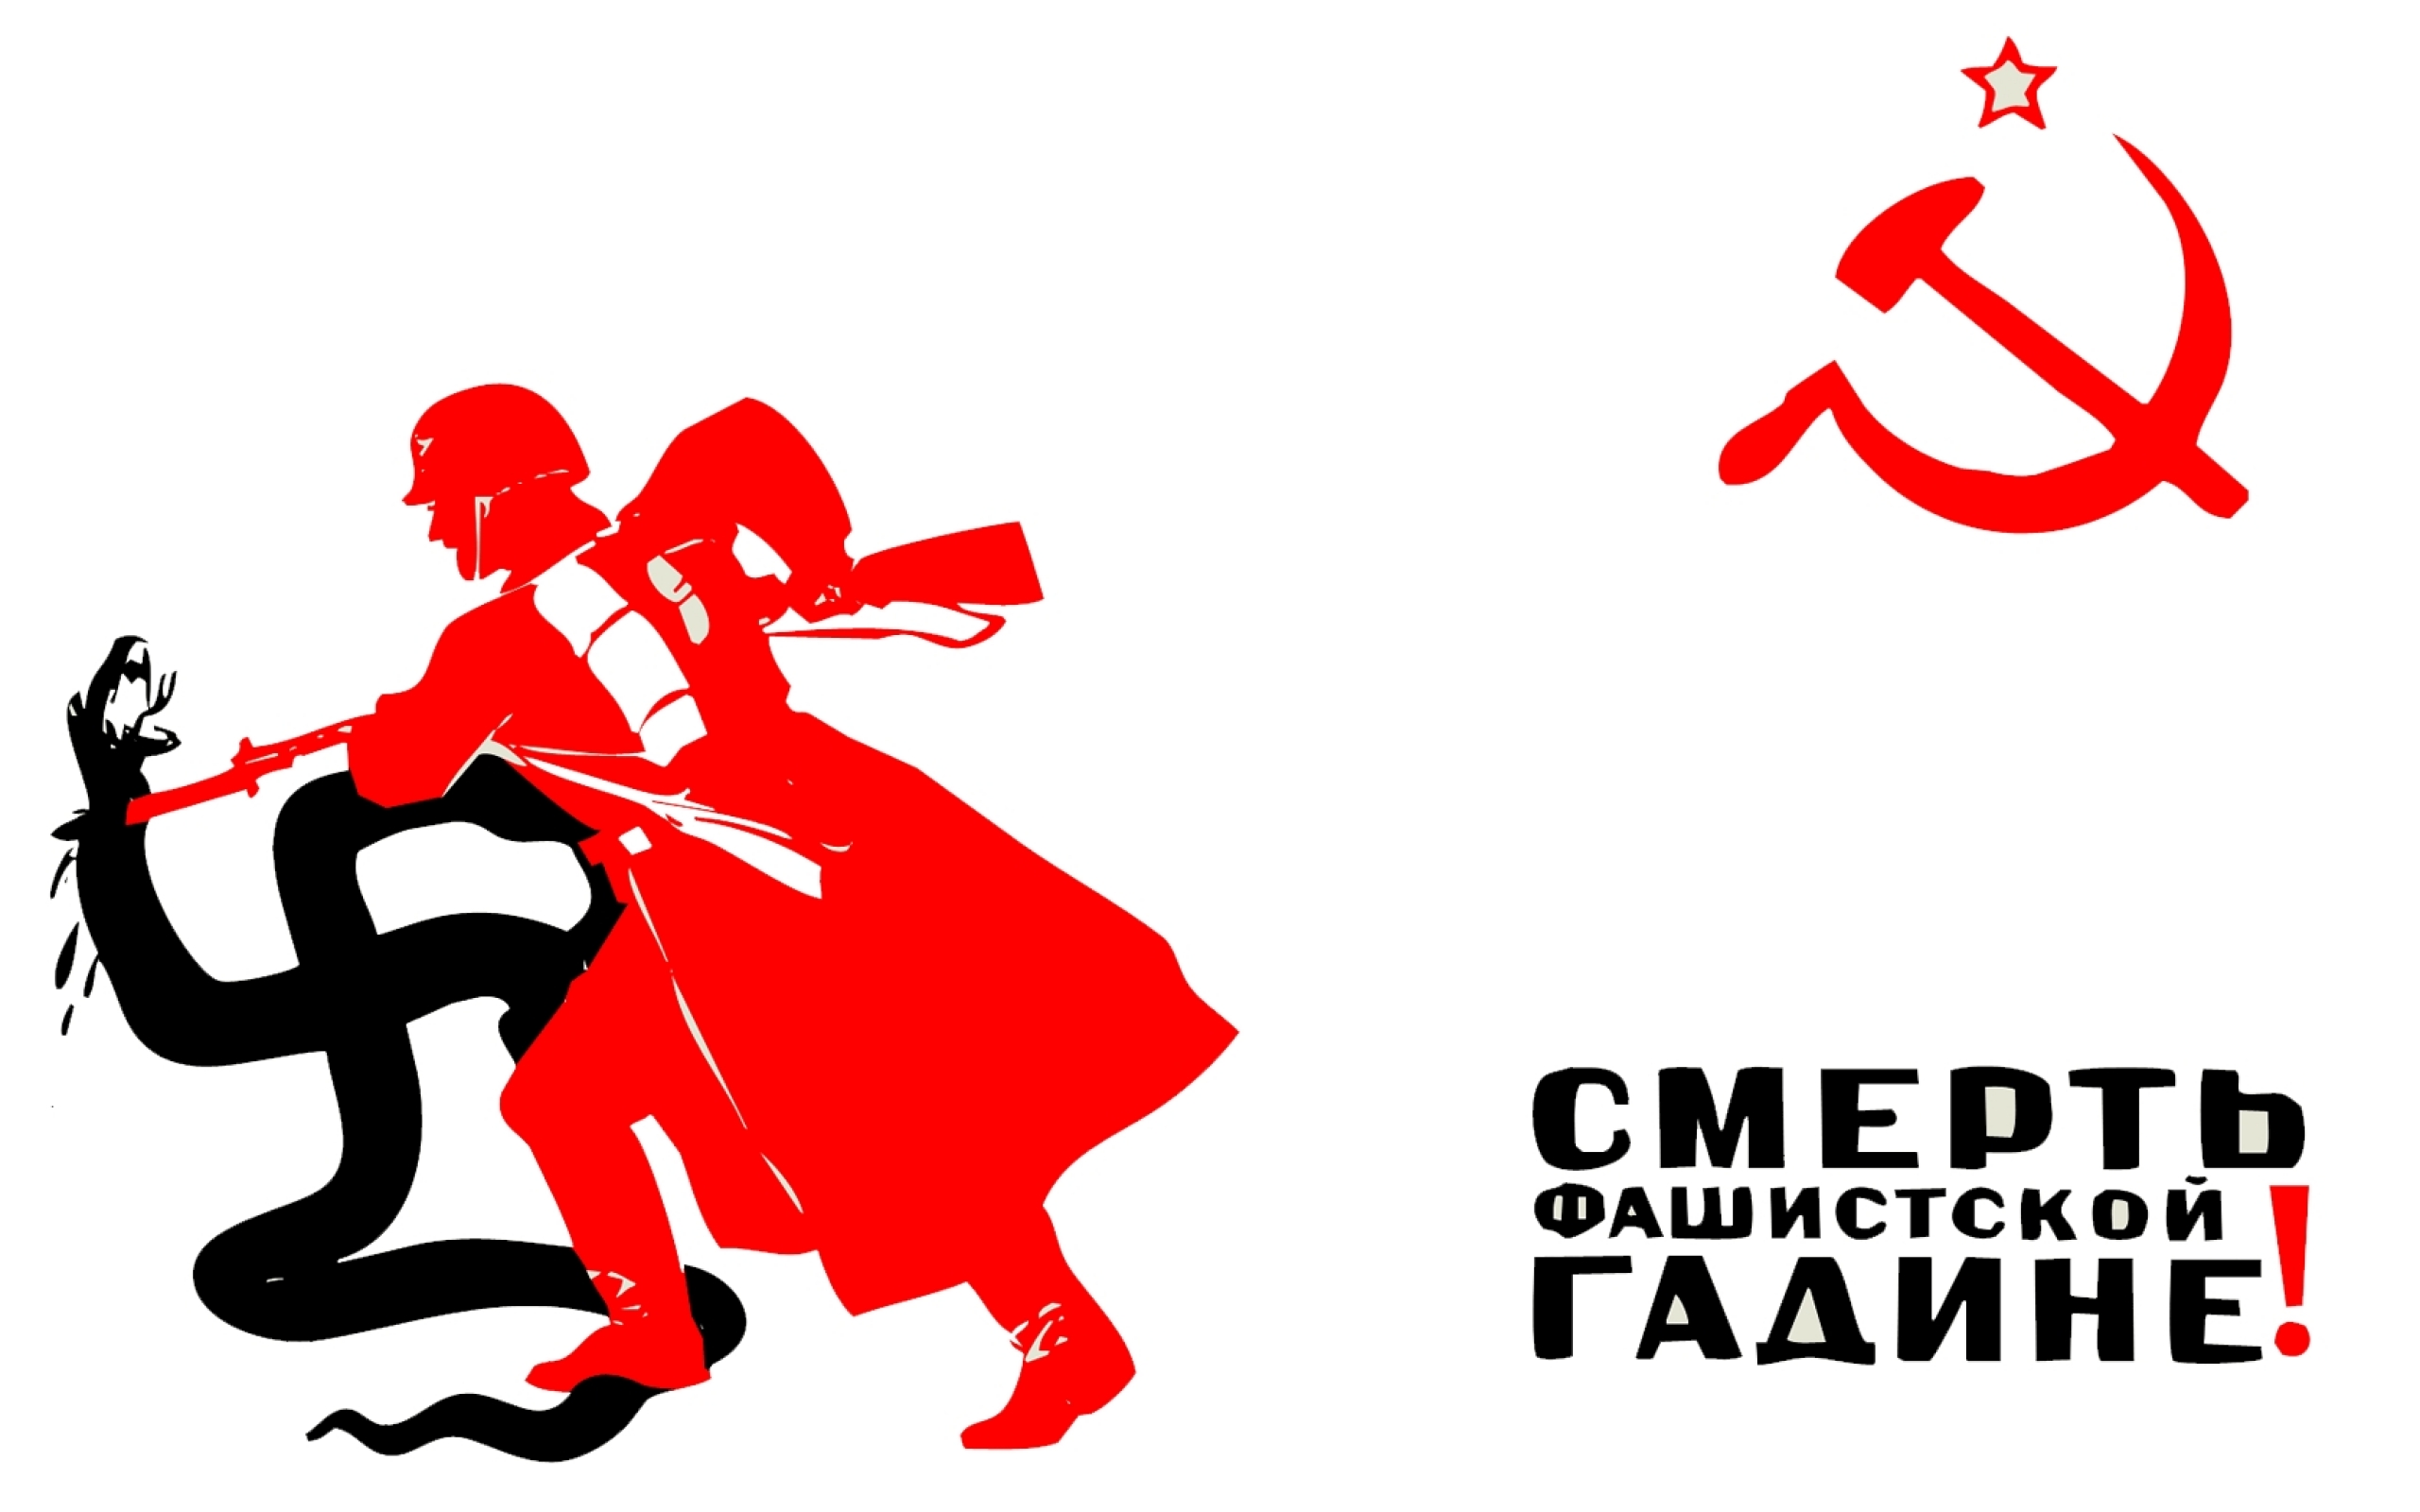 Плакат смерть фашистской гадине